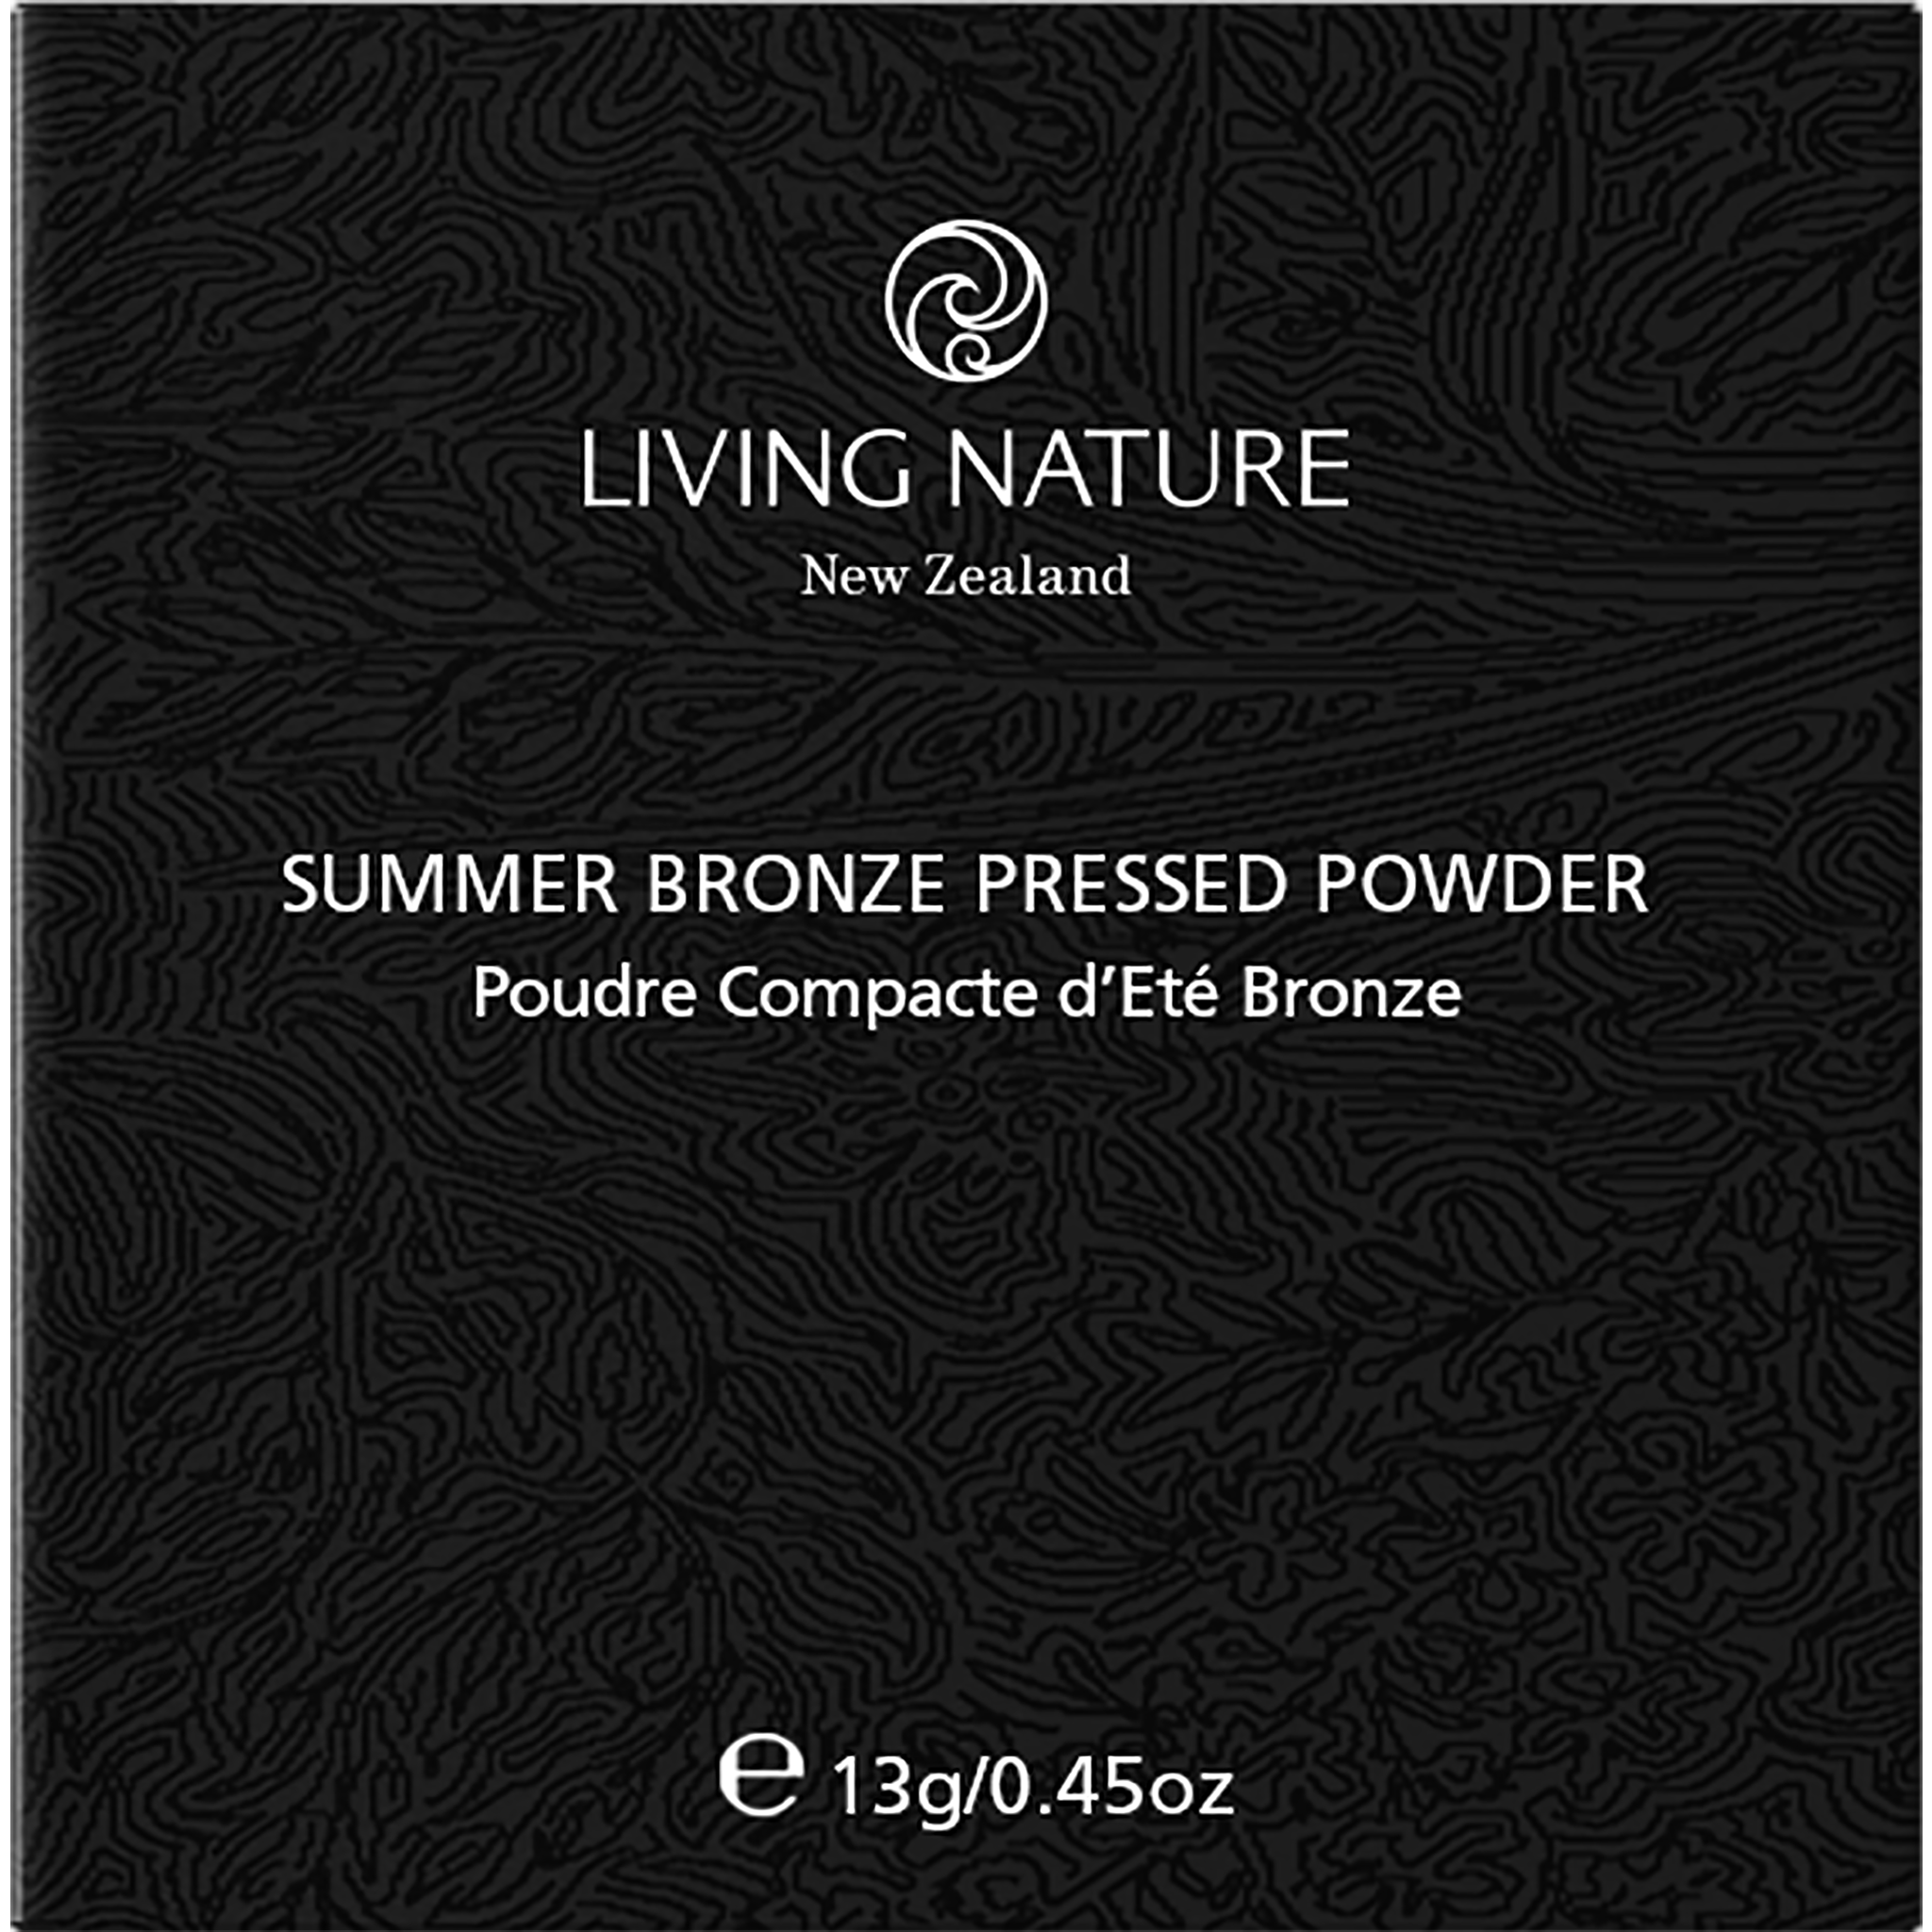 Summer Bronze Pressed Powder